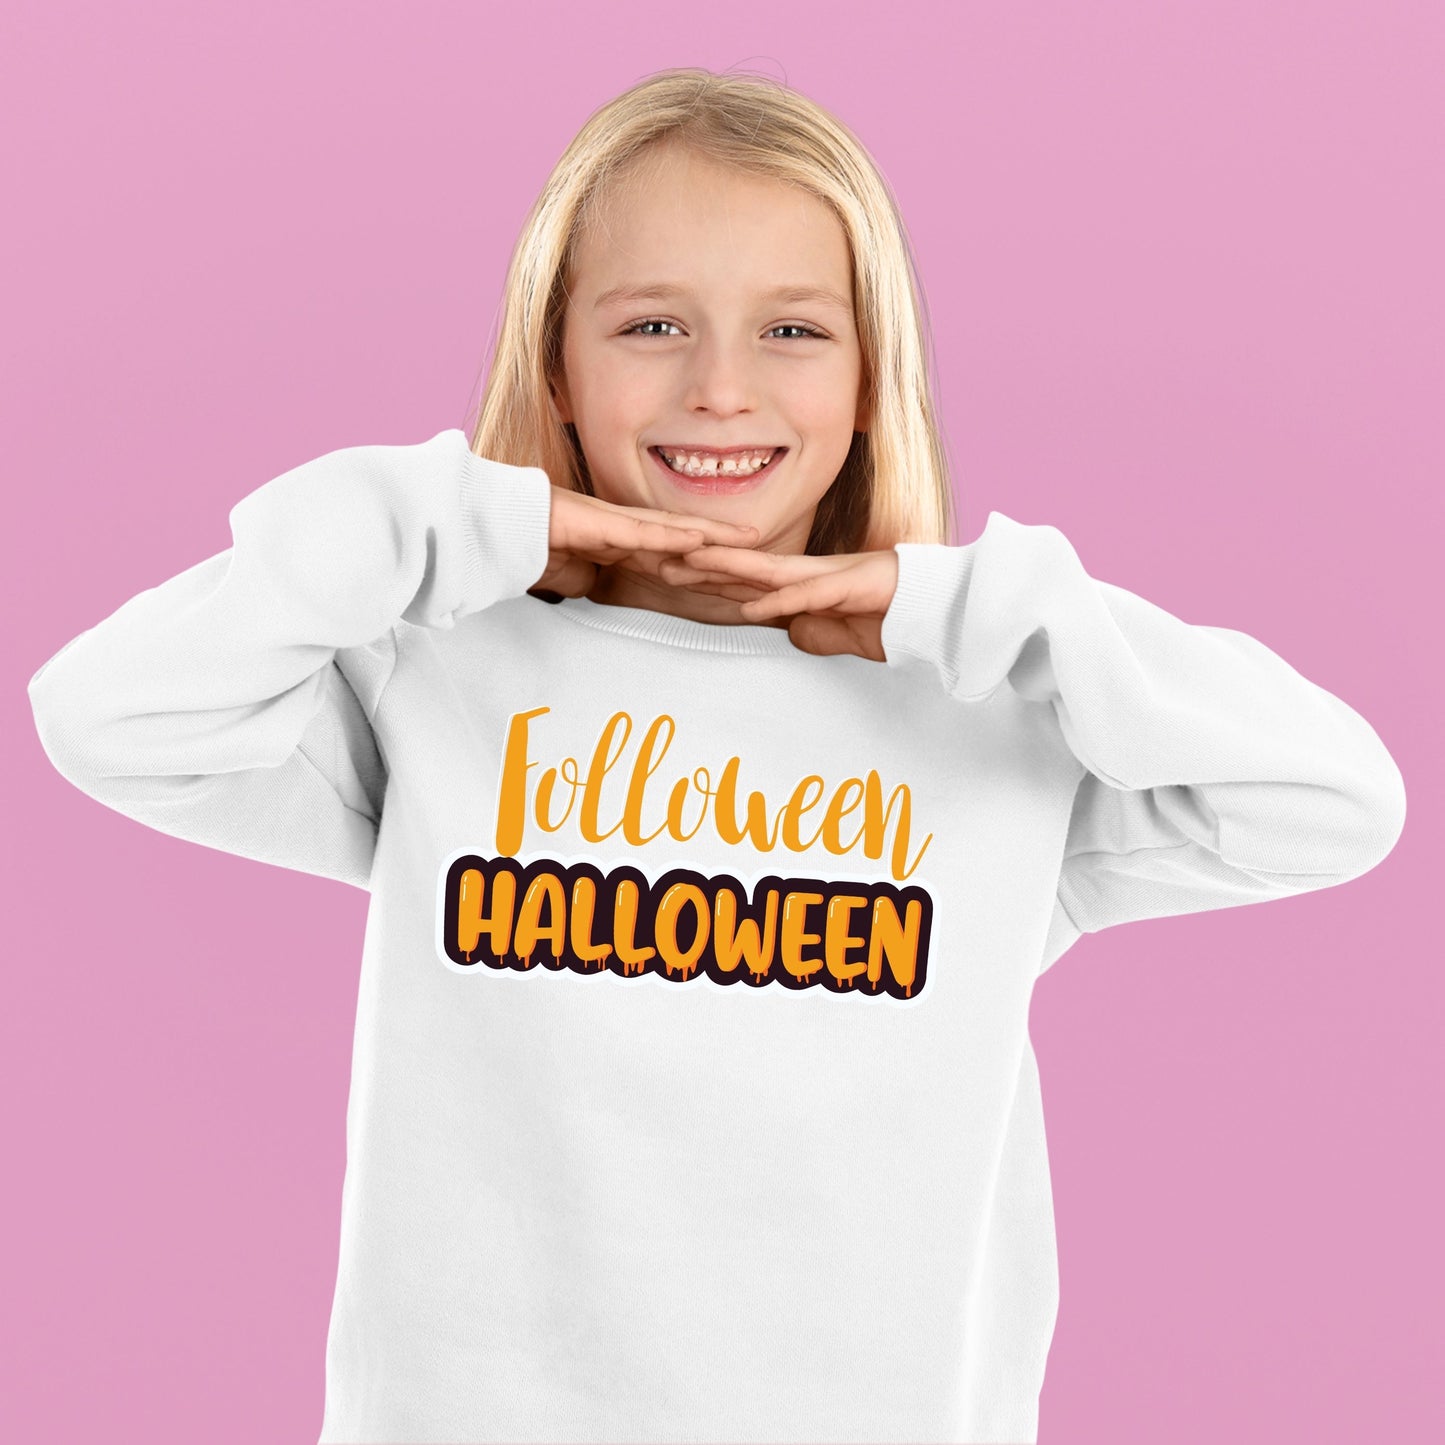 Halloween Folloween Halloween Bodysuit, Halloween Gift Bodysuit, Halloween Onesies, Cute Halloween Bodysuit, Halloween Design Shirt